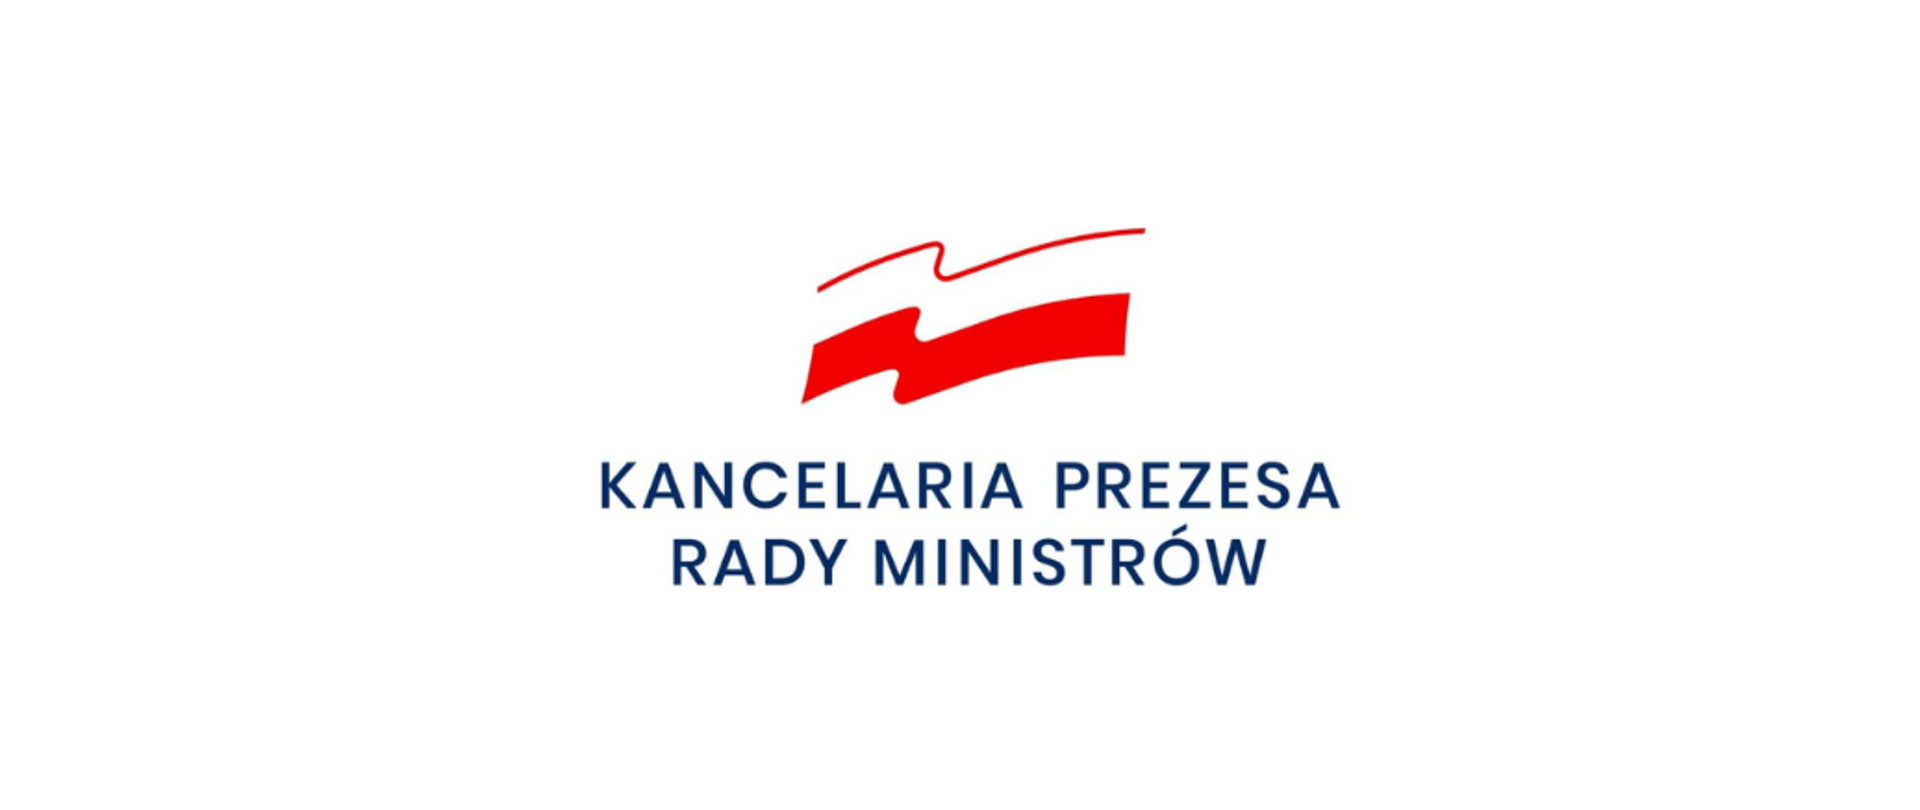 Grafika przedstawia granatowy napis "Kancelaria Prezesa Rady Ministrów" umieszczony centralnie. Nad nim pofalowana biało-czerwona flaga.